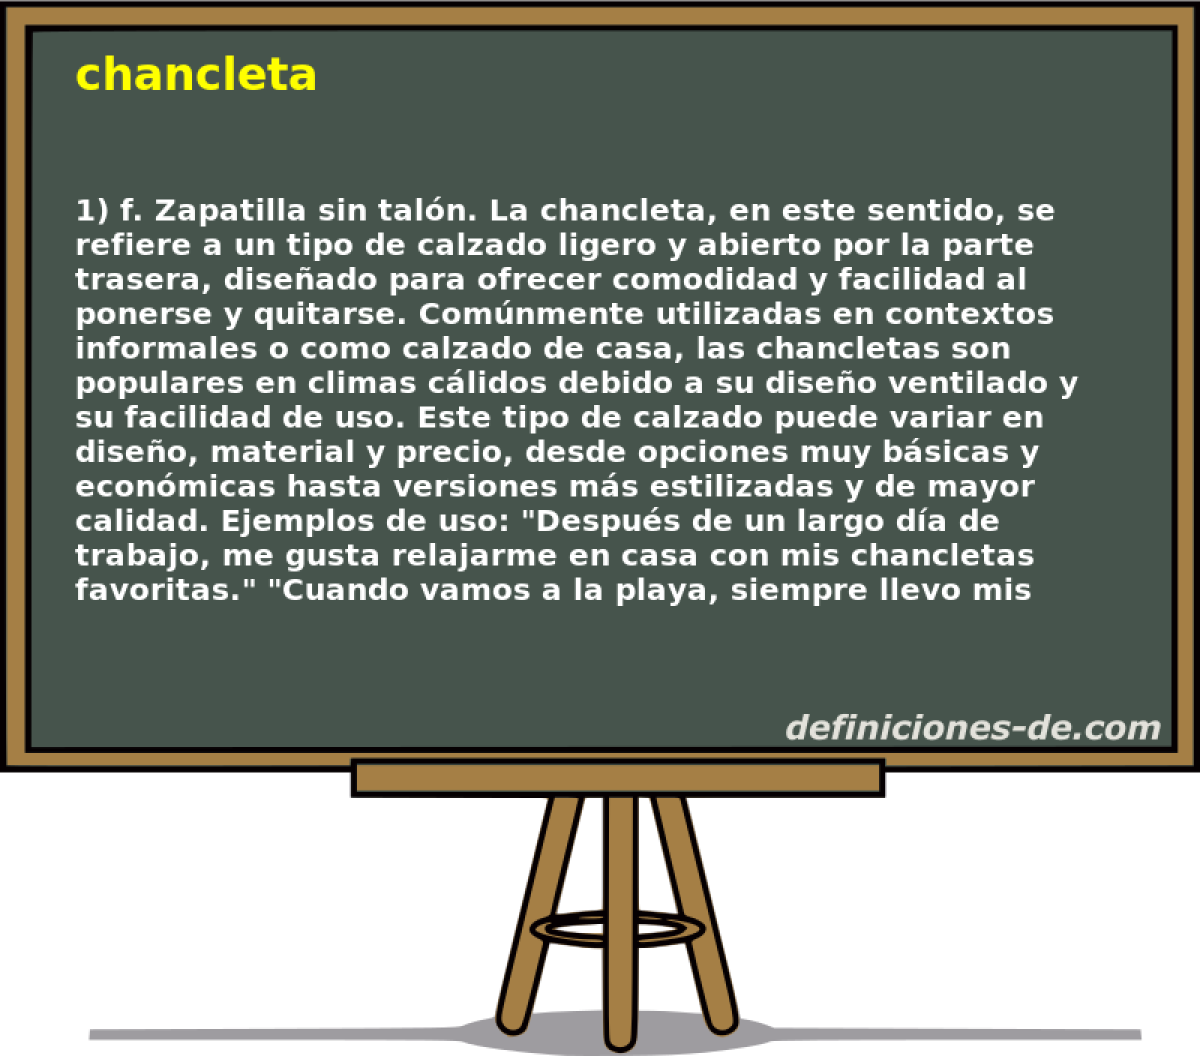 chancleta 